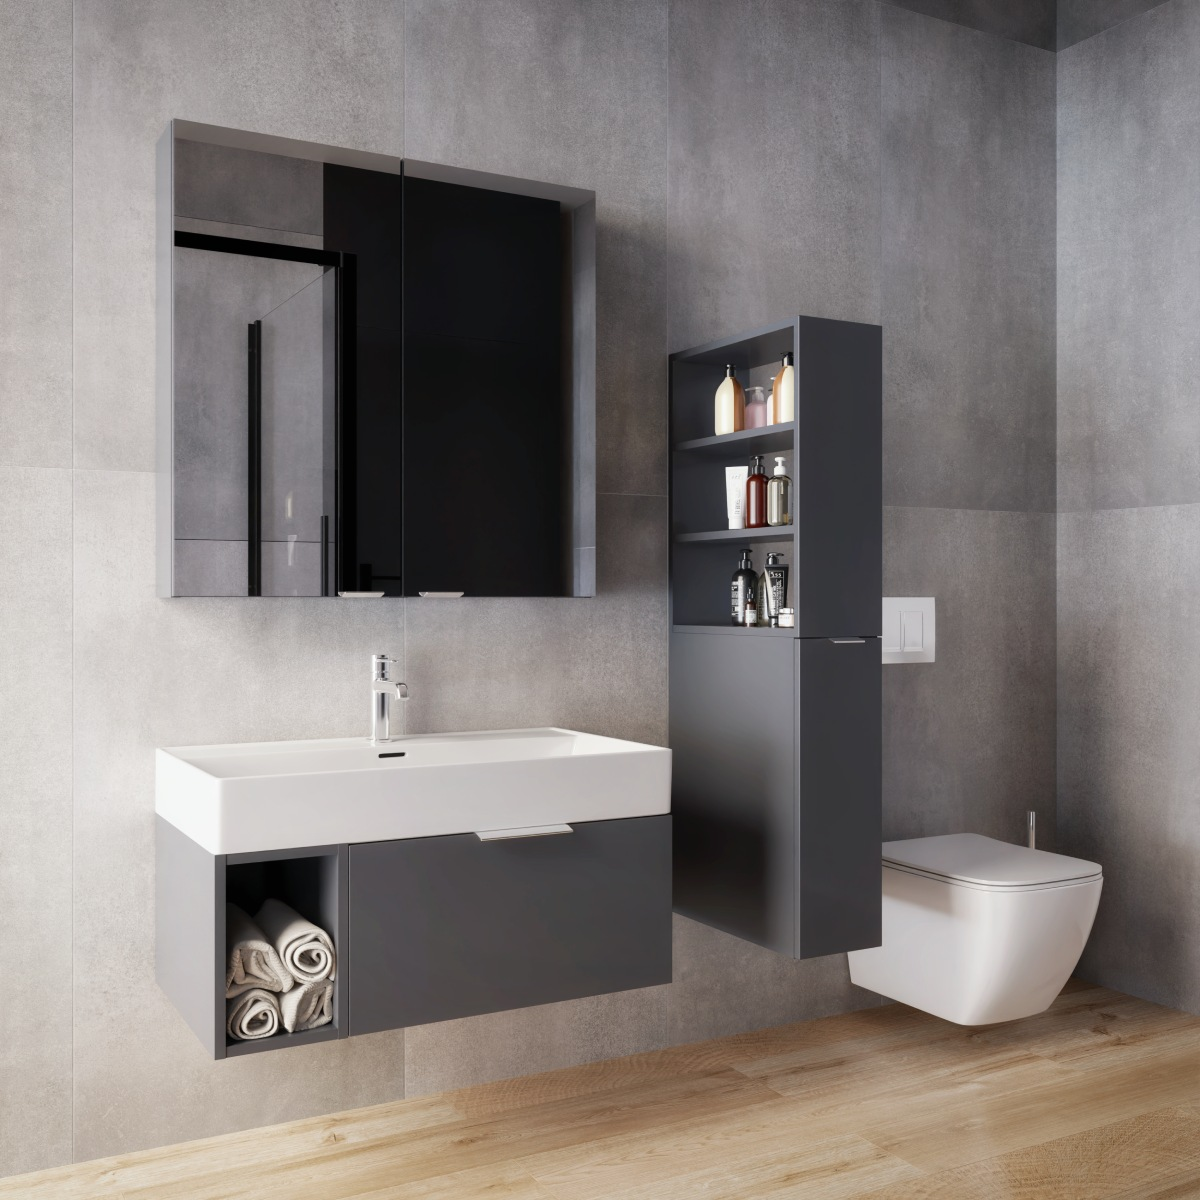 Nowoczesne meble modułowe IÖ Modular w minimalistycznej łazience